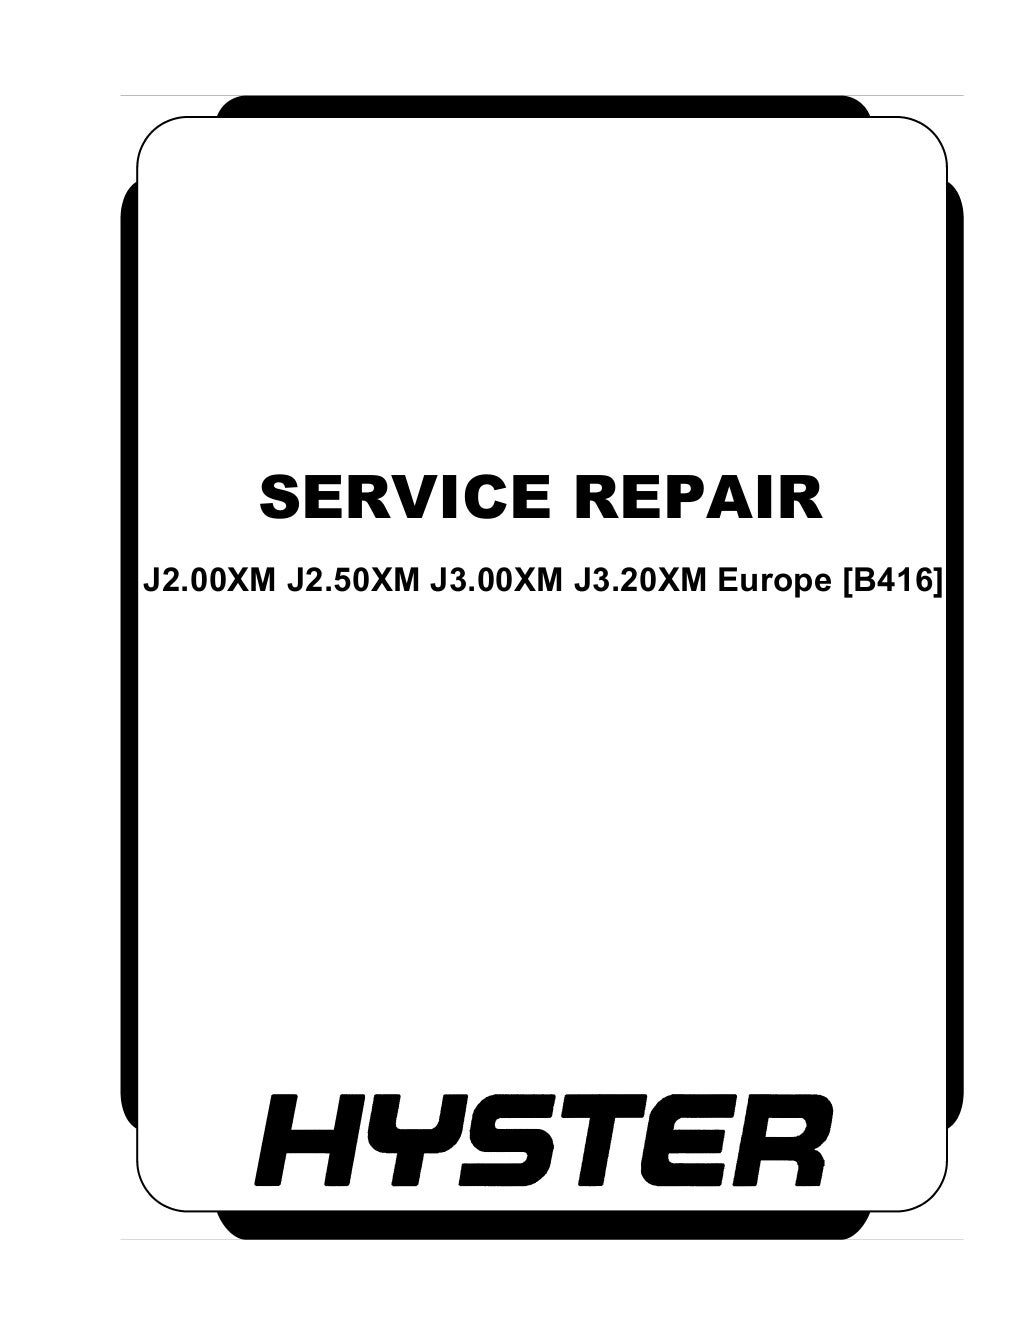 Hyster b416 (j3.20 xm europe) forklift service repair manual